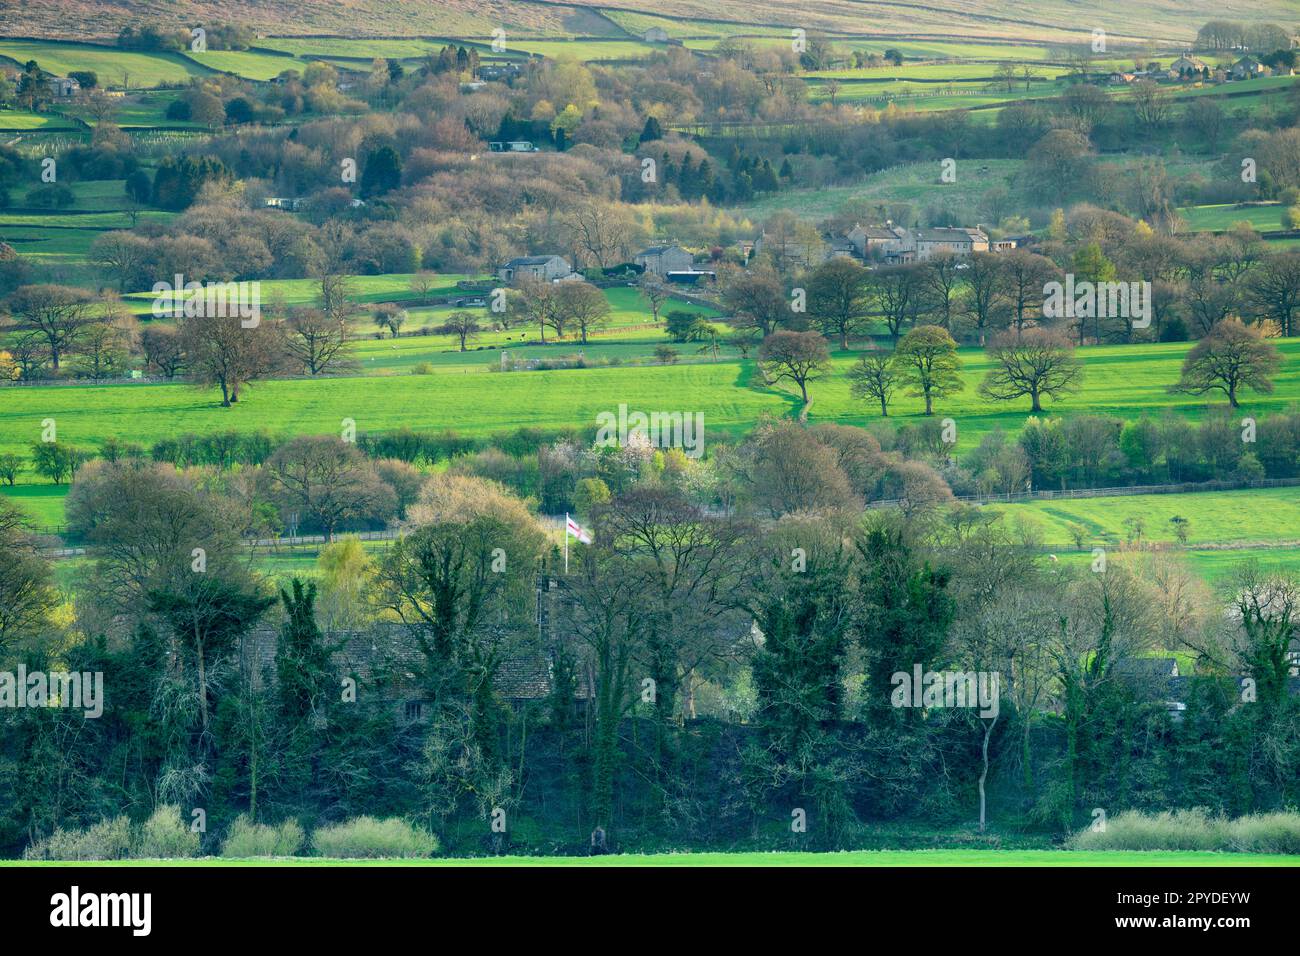 Beau hameau paisible et ensoleillé (maisons isolées à flanc de colline et cottages sur colline ensoleillée, landes hautes terres) - Addingham Moorside, West Yorkshire, Angleterre, Royaume-Uni. Banque D'Images